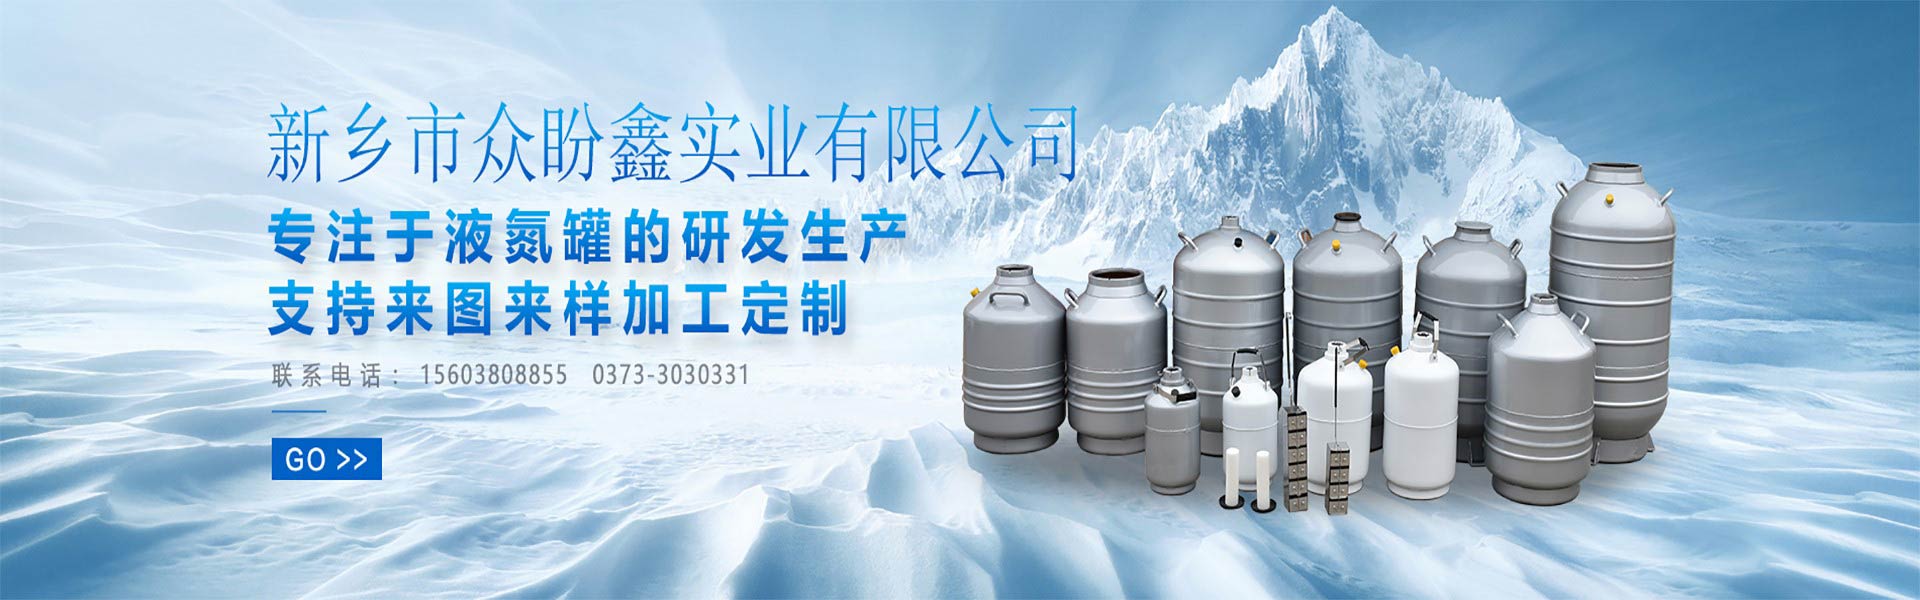 中国液氮罐制造商-众盼鑫液氮罐